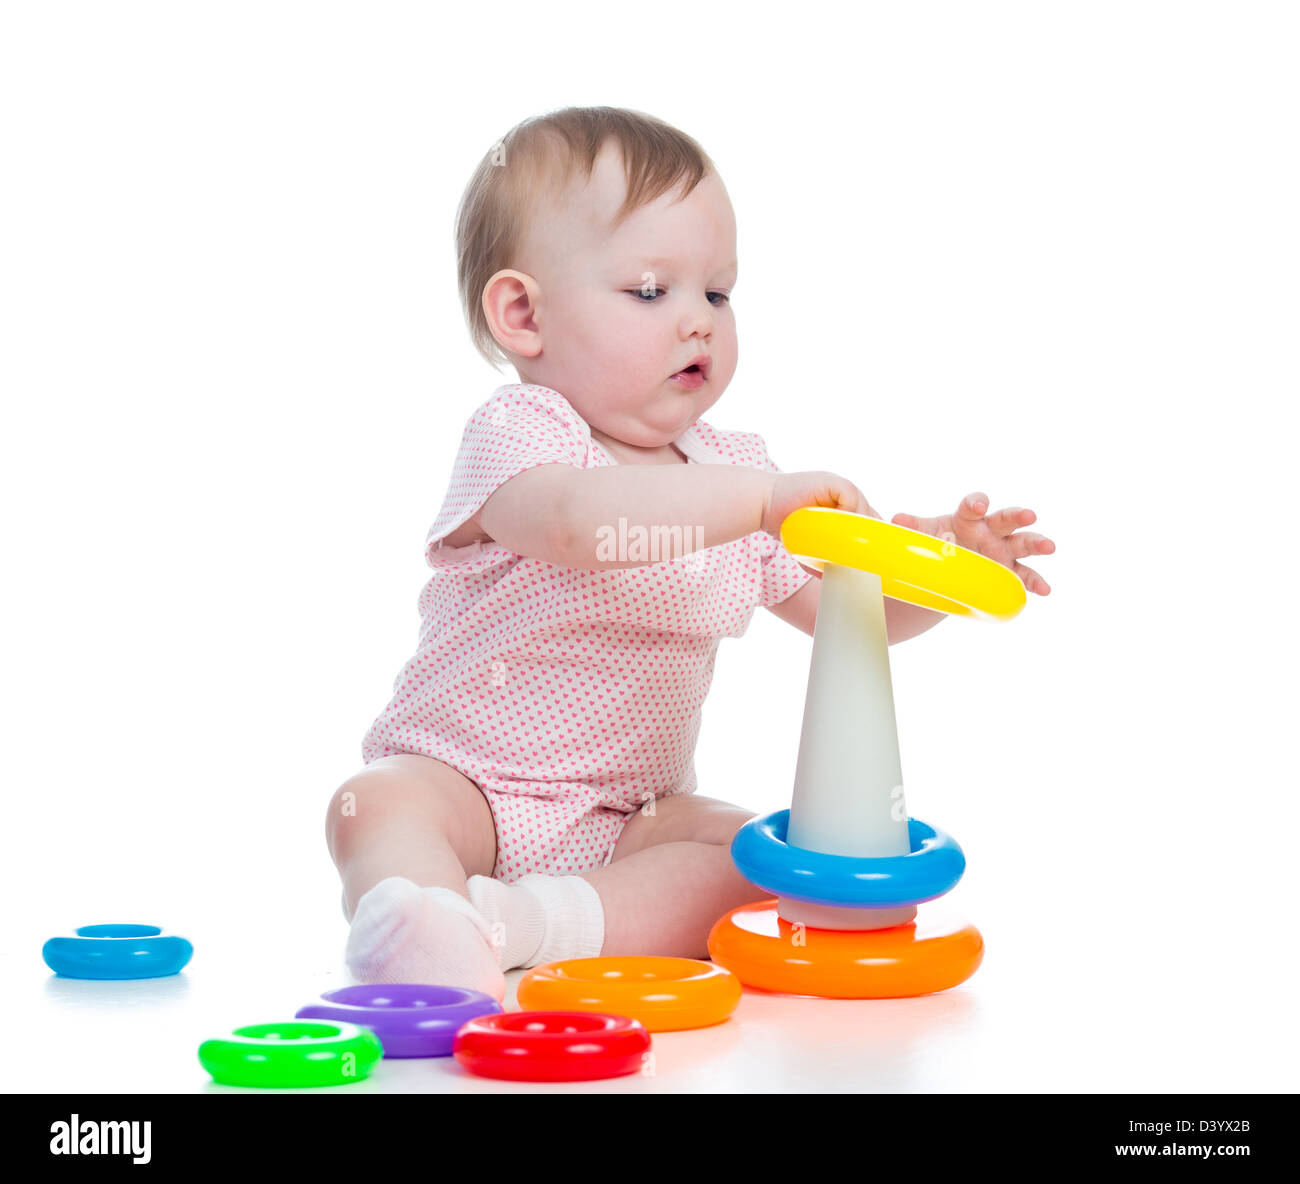 Carino kid ragazza che gioca con il giocattolo educativo isolato su bianco Foto Stock